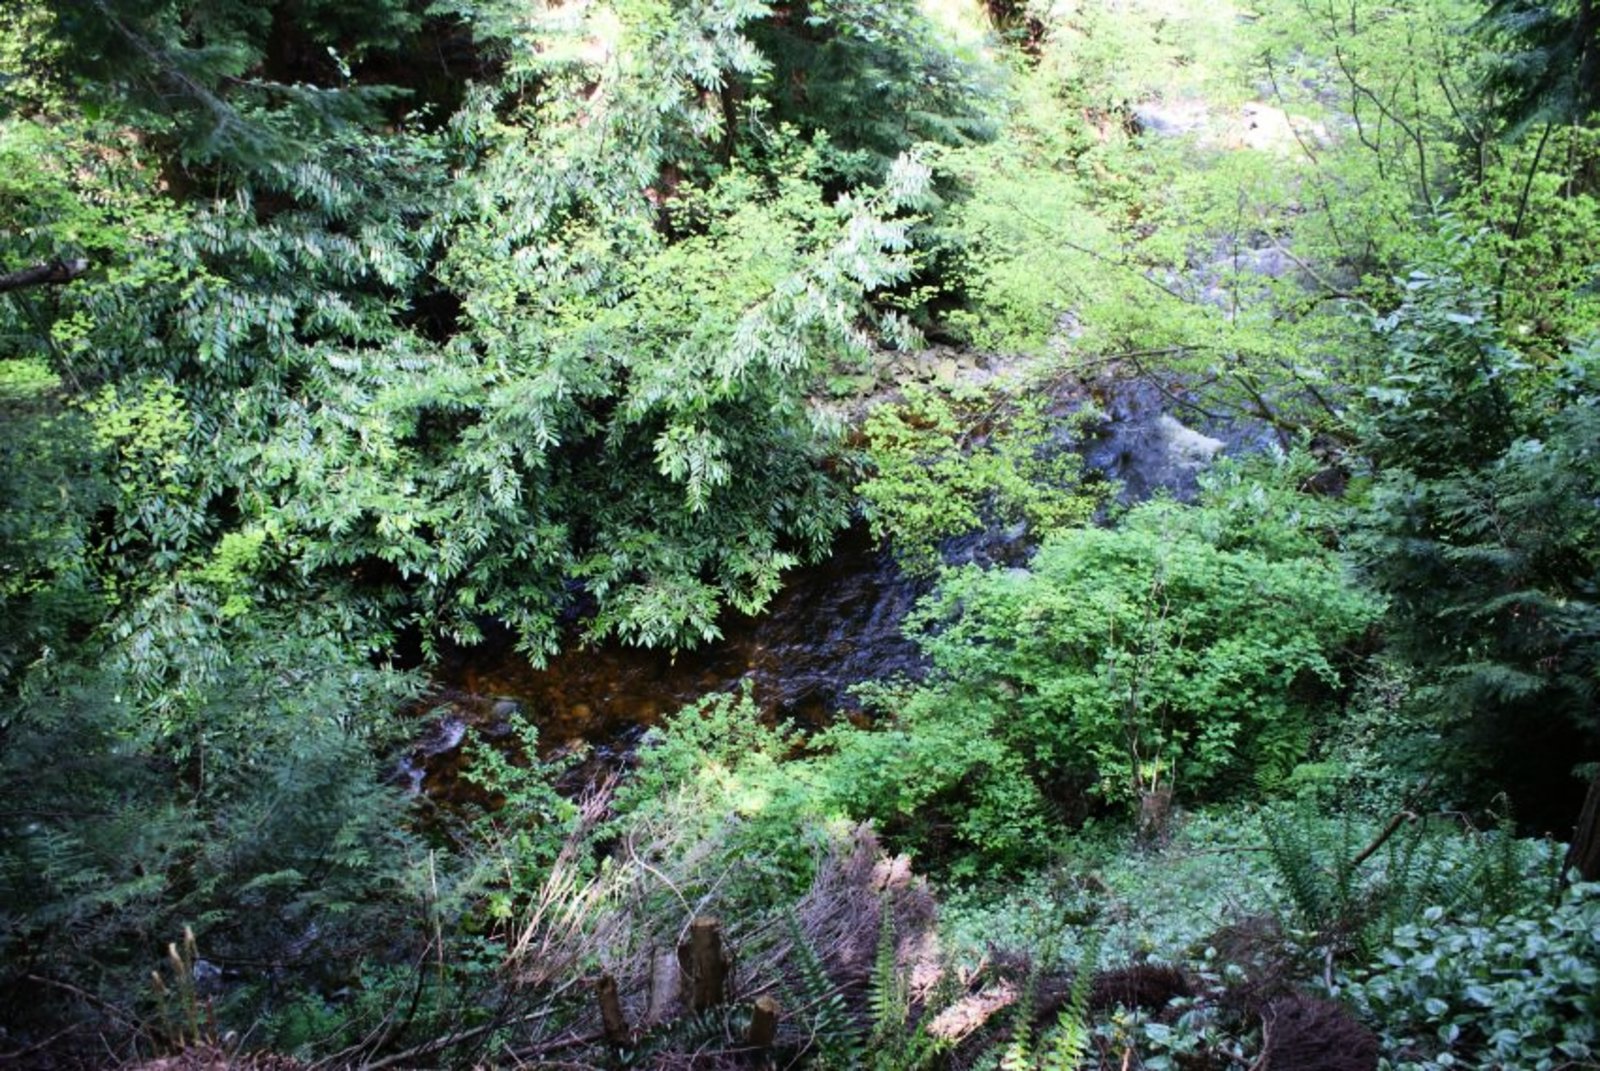 Creek View